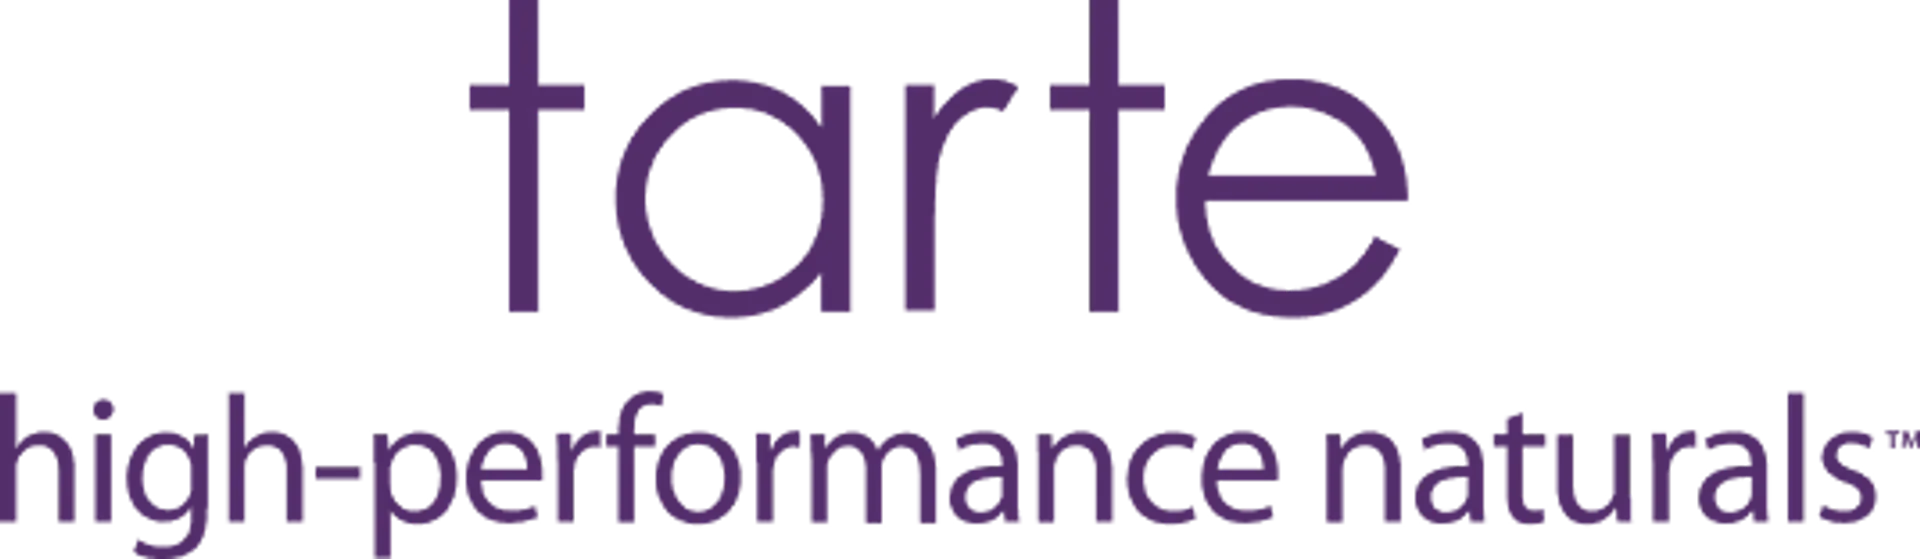 TARTE logo